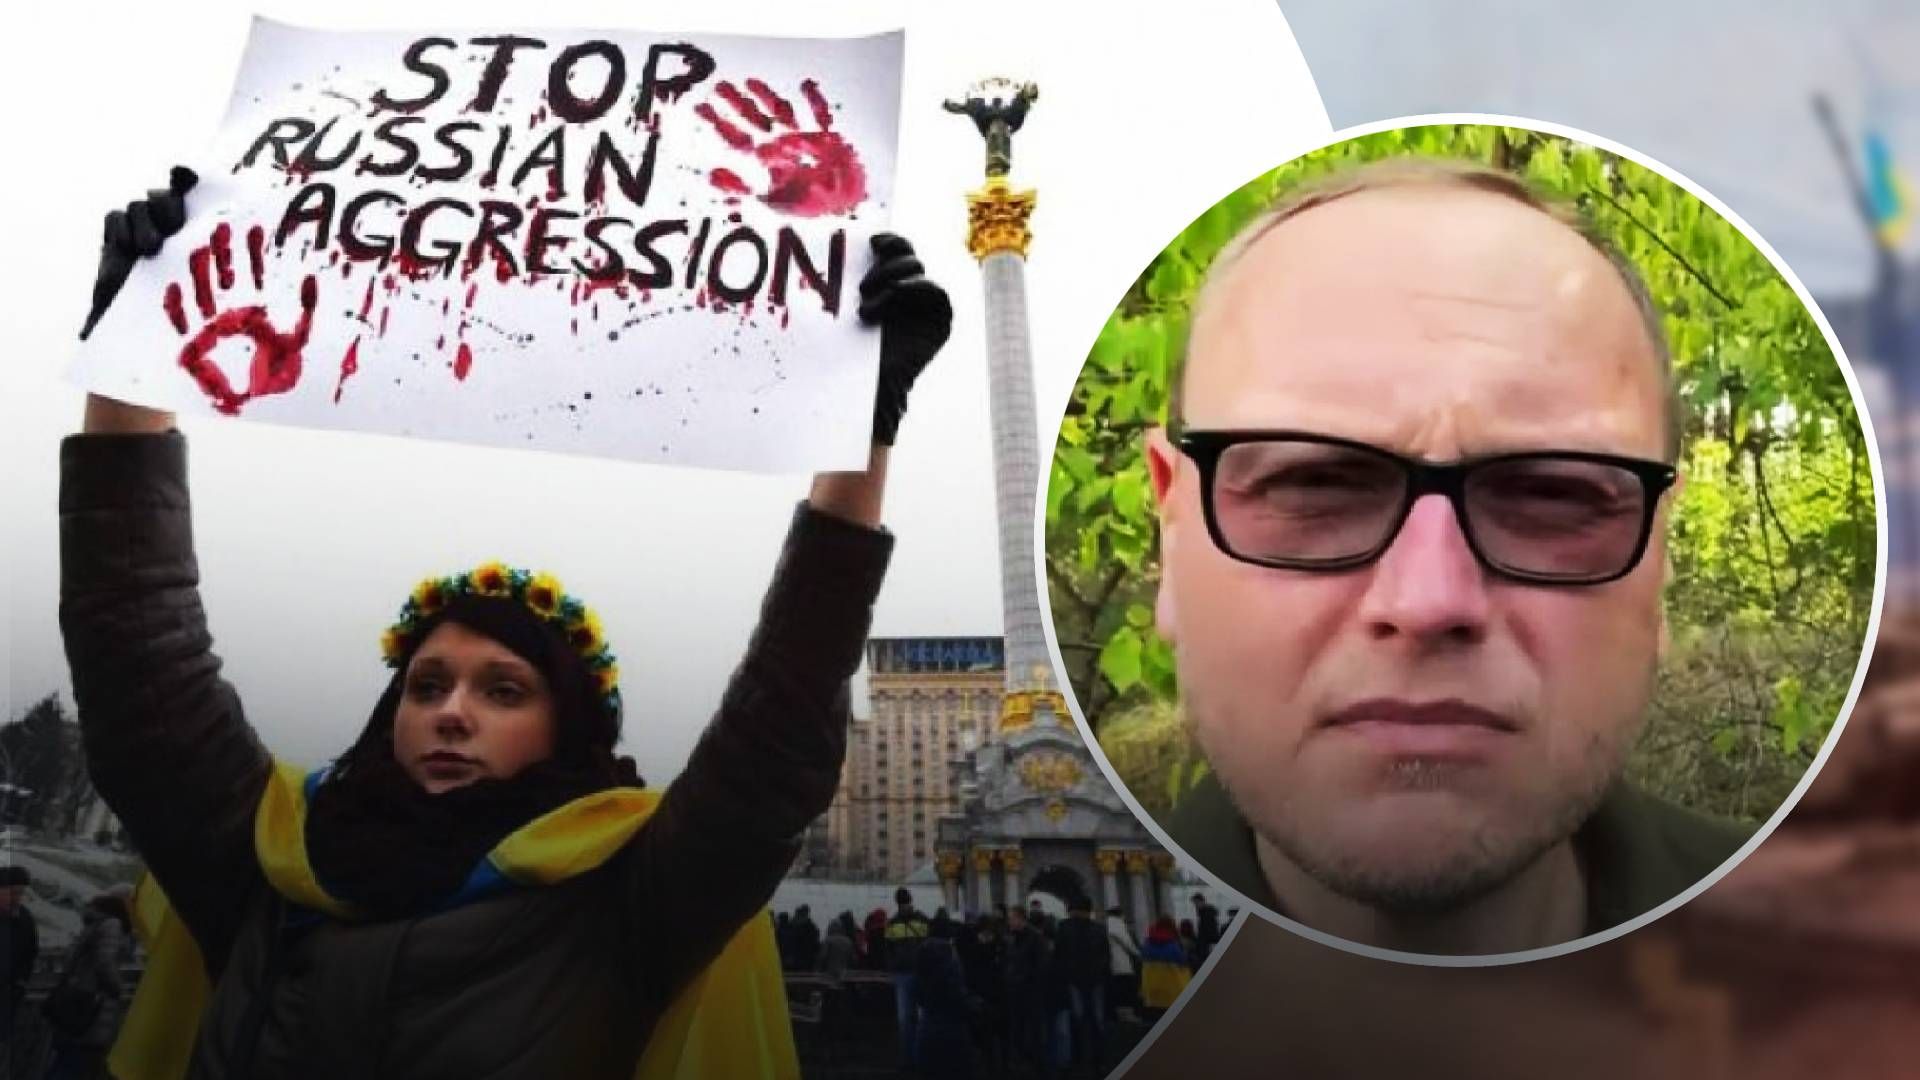 Росію потрібно покарати за агресію проти України - загроза для світу